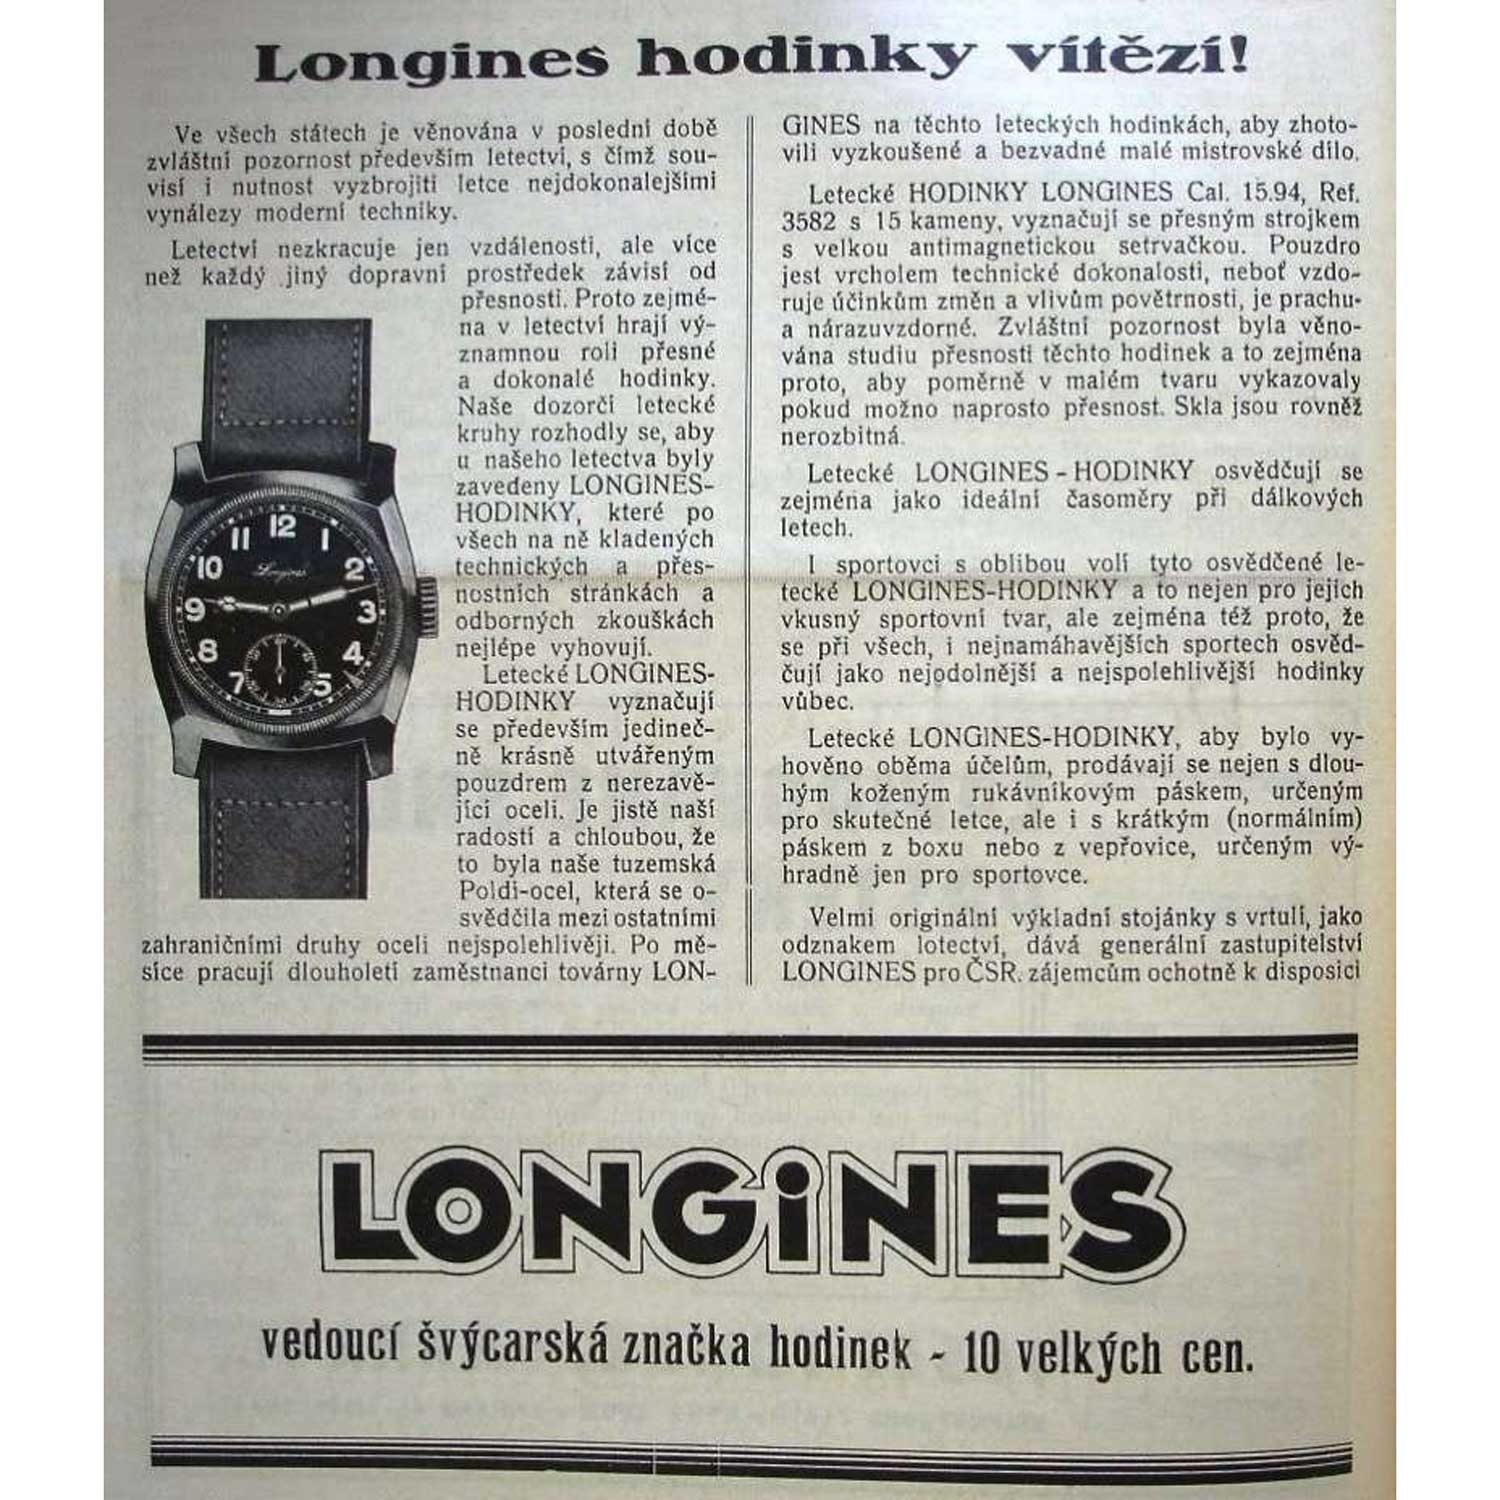 An old advertisement for vintage Longines Majetek